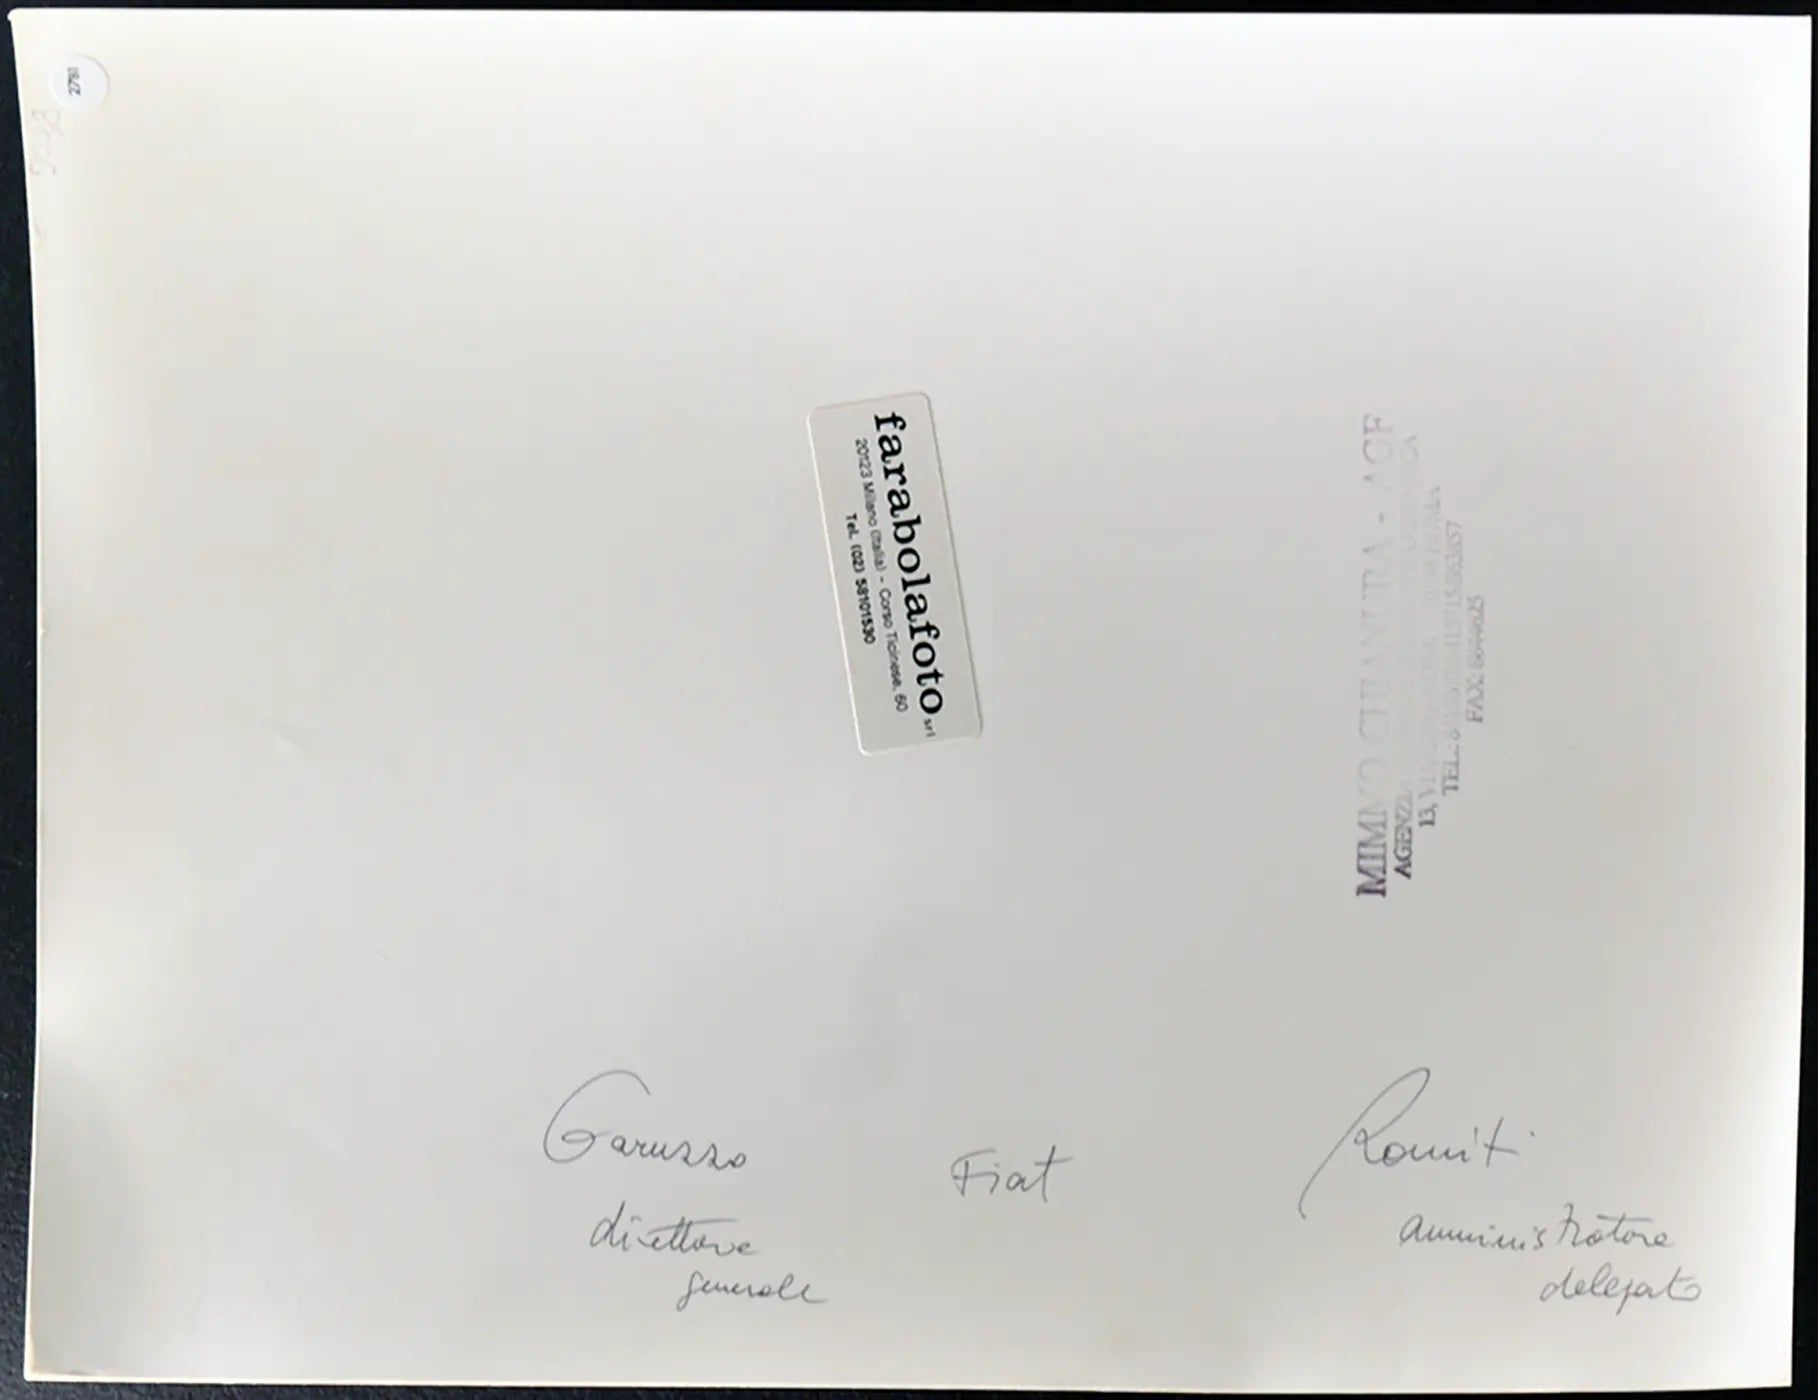 Romiti e Garuzzo anni 90 Ft 2781 - Stampa 24x30 cm - Farabola Stampa ai sali d'argento